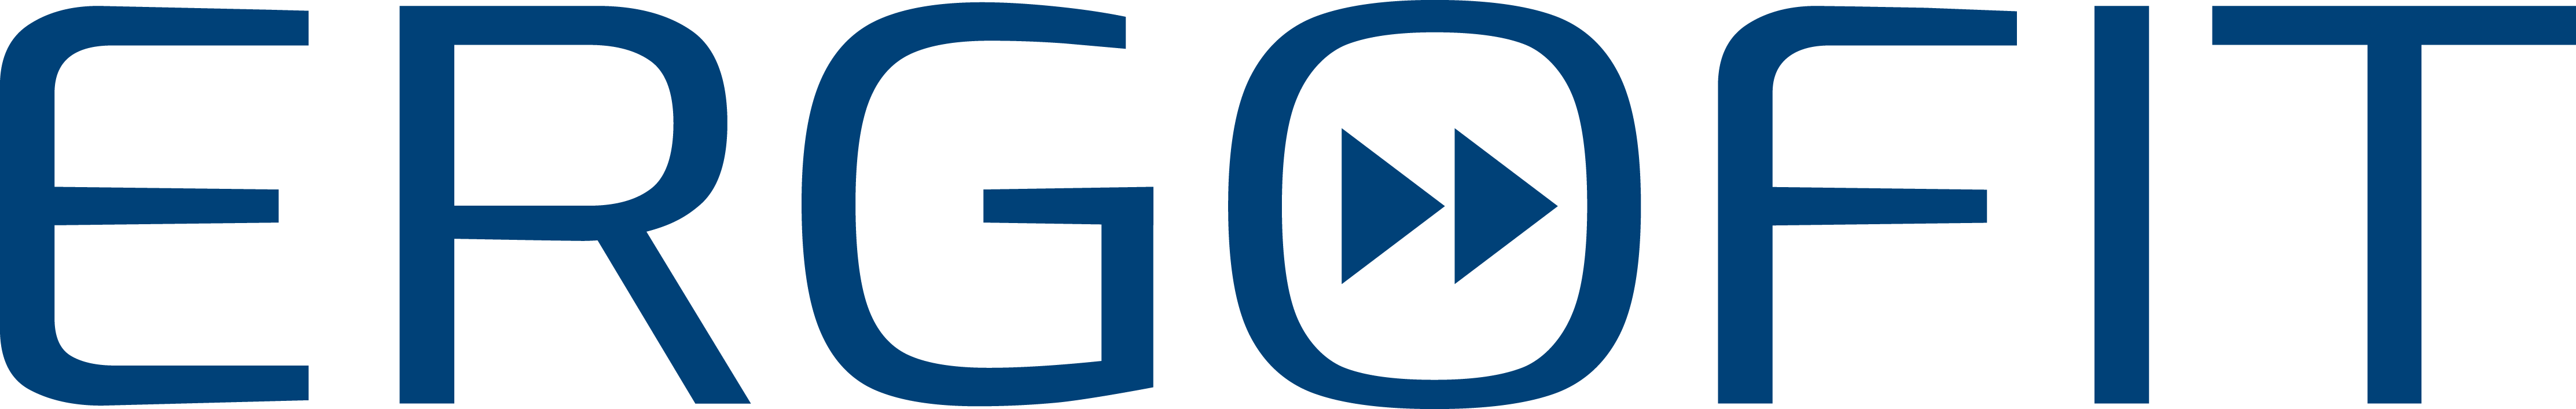 ERGOFIT logo